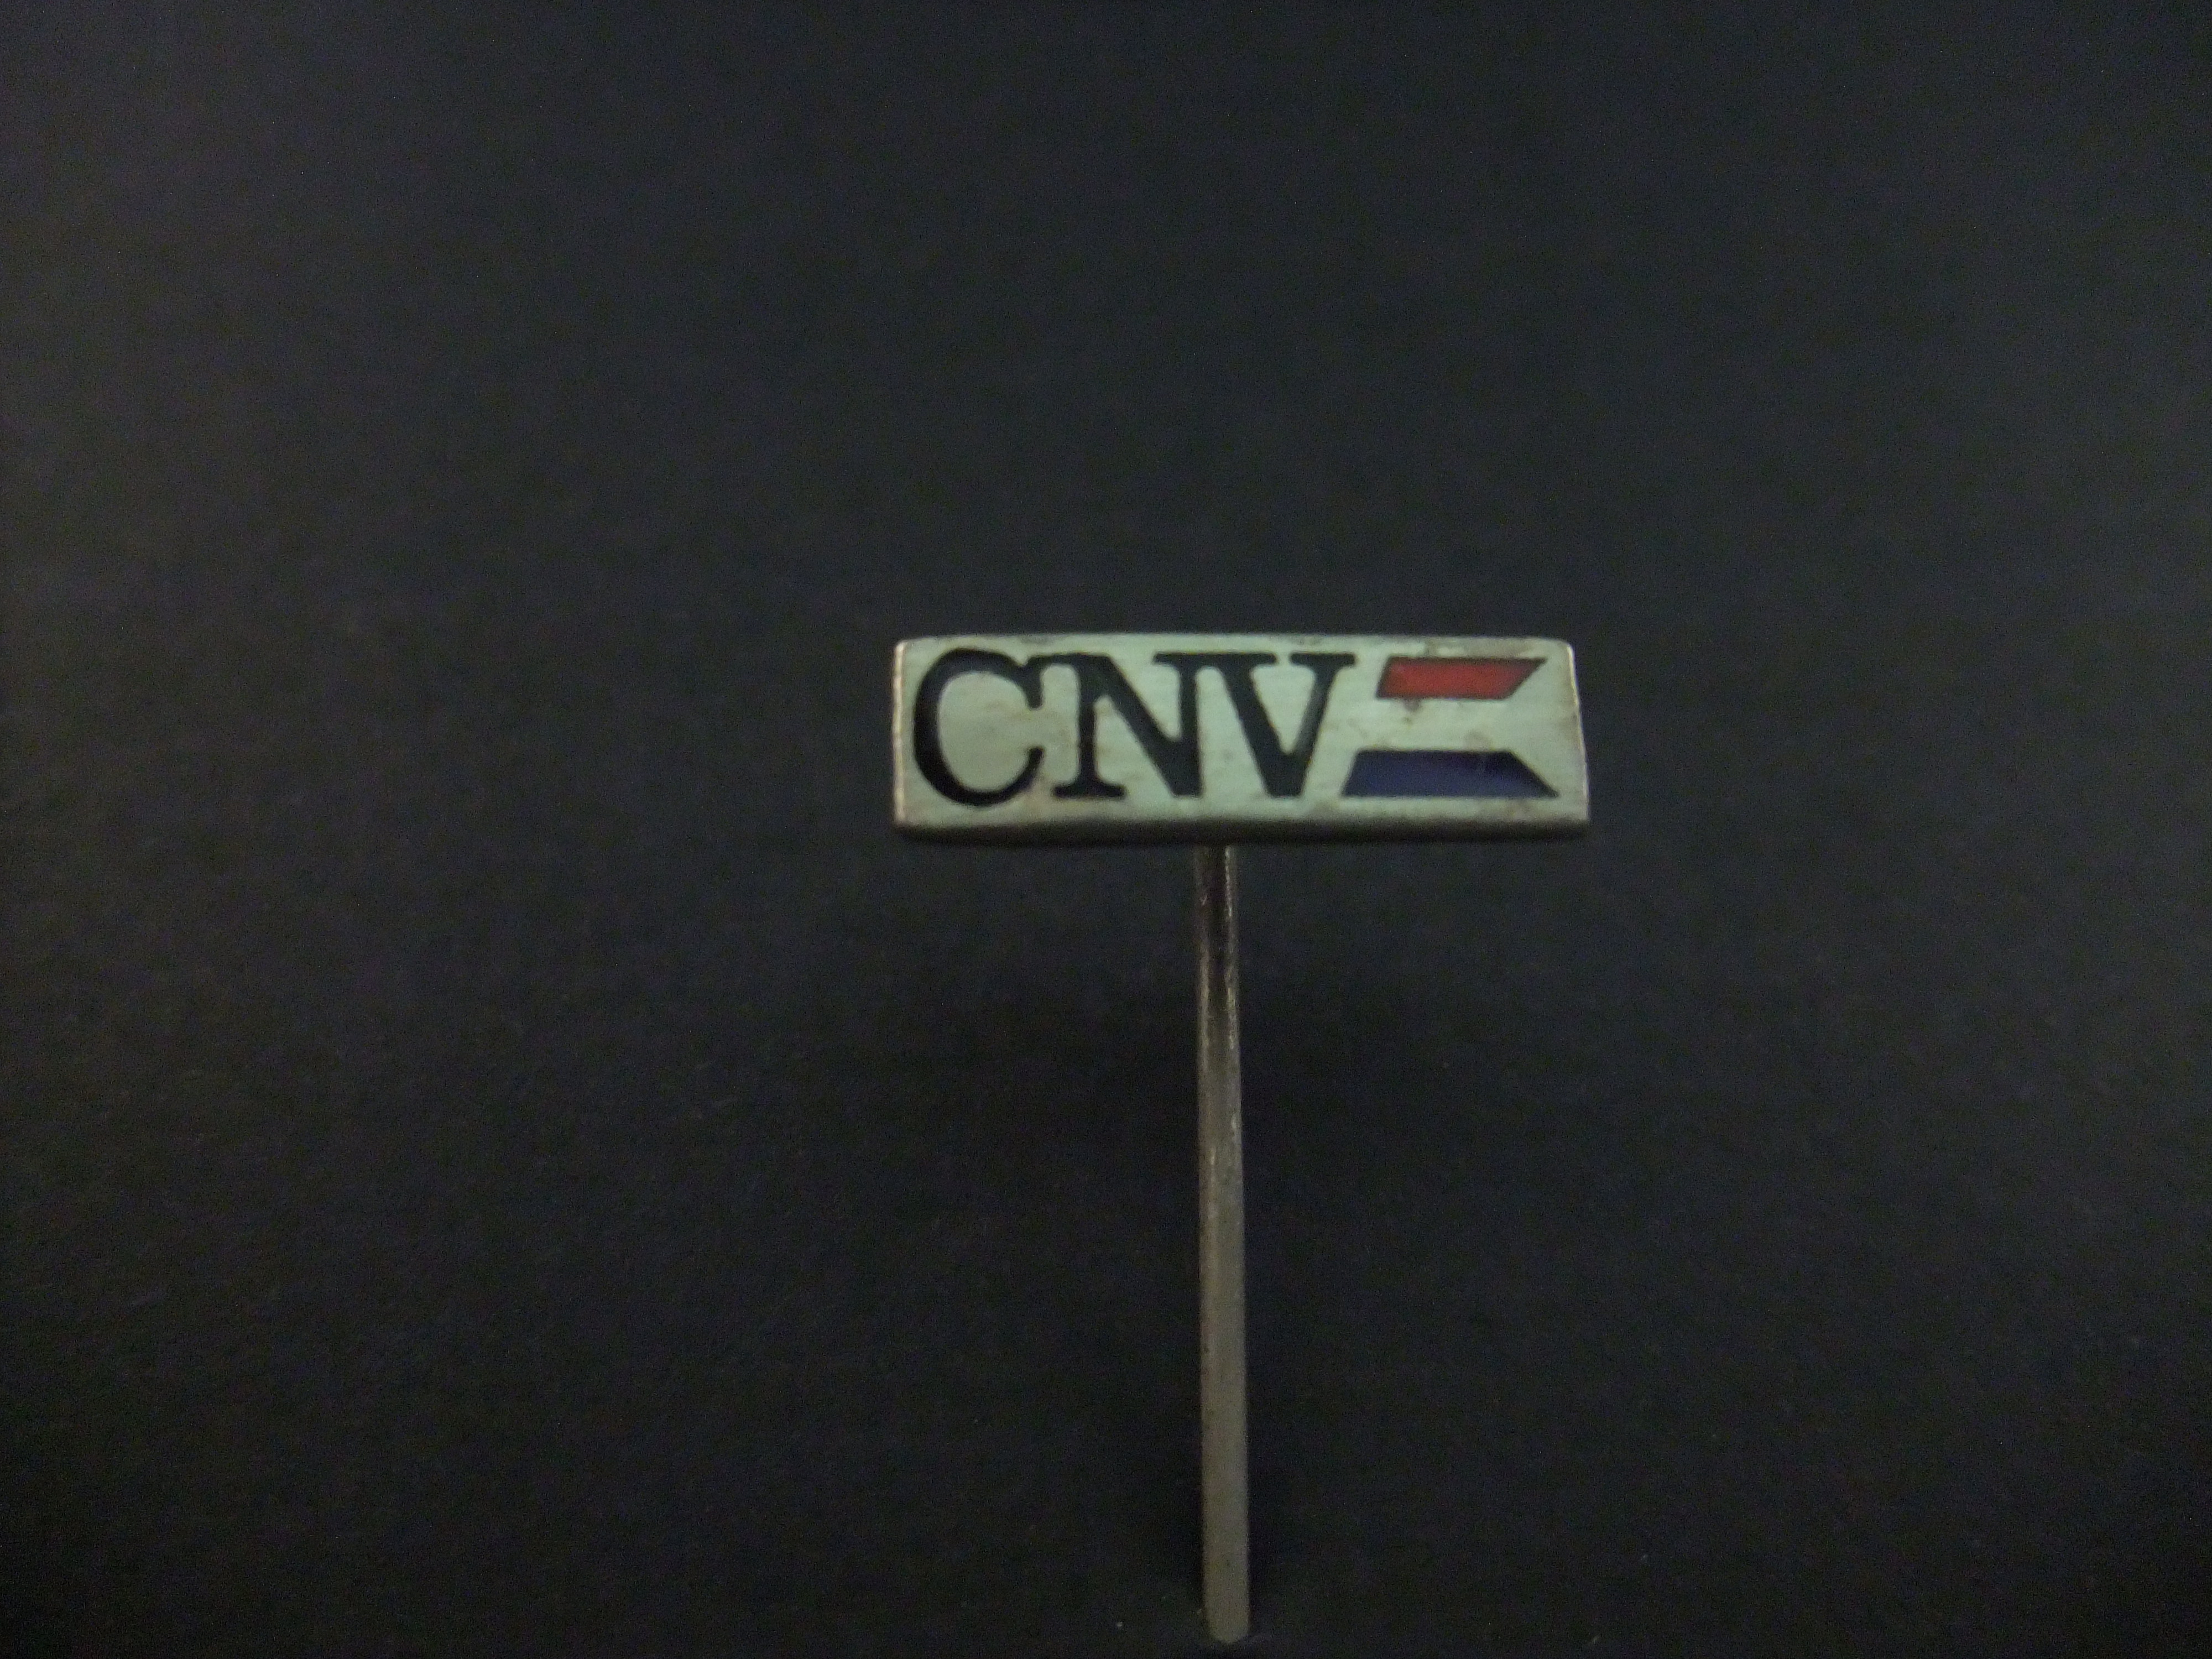 CNV ( Christelijk Nationaal Vakverbond) werknemersorganisatie op christelijke grondslag logo